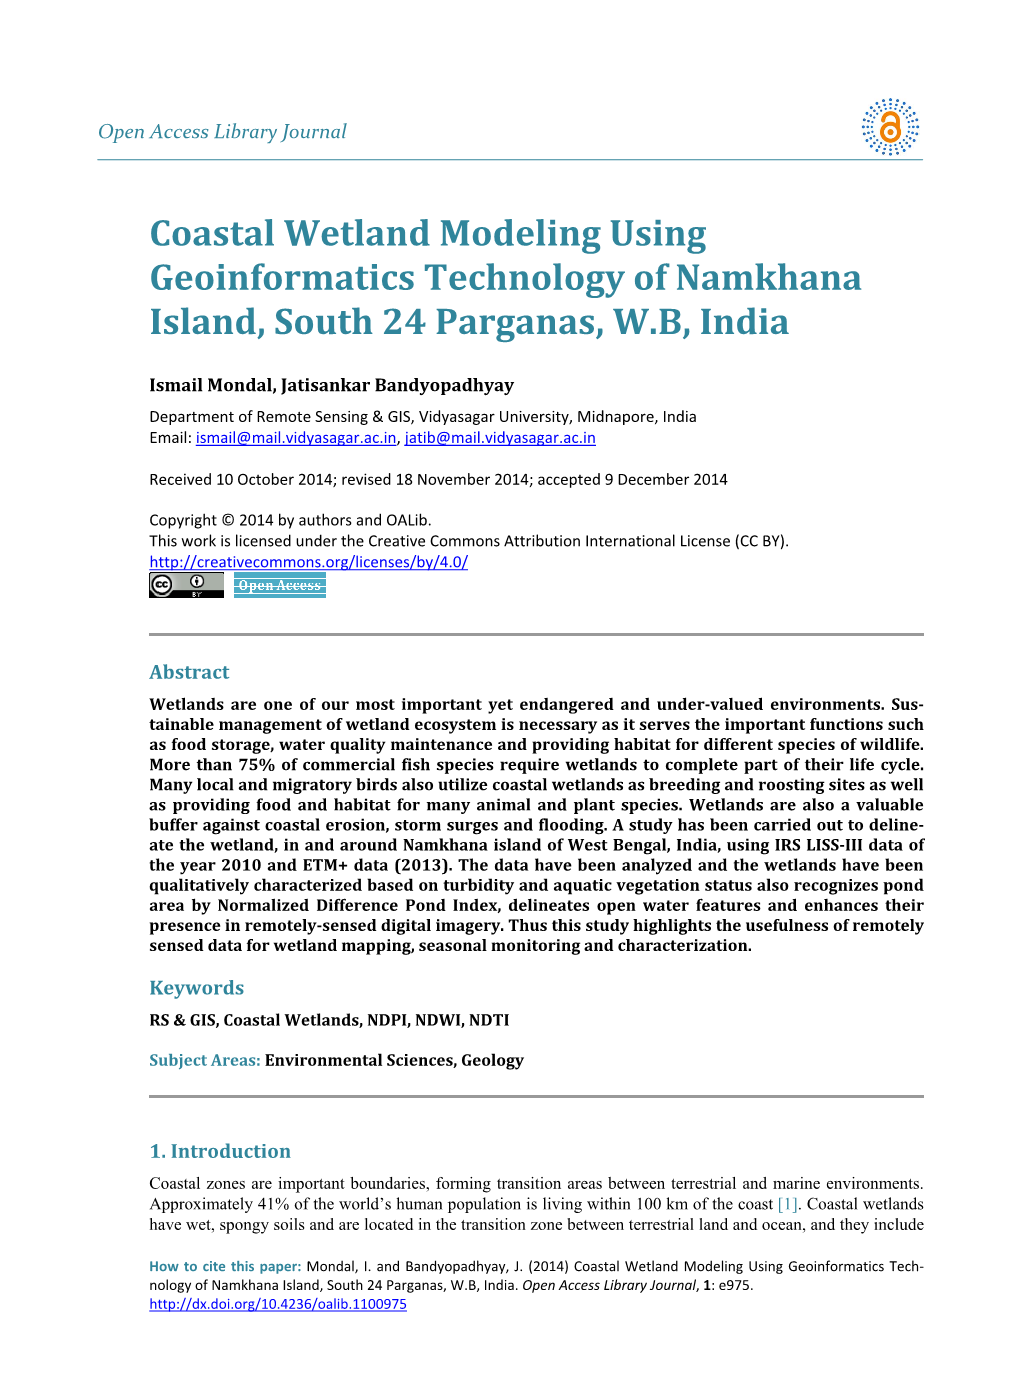 Coastal Wetland Modeling Using Geoinformatics Technology of Namkhana Island, South 24 Parganas, W.B, India